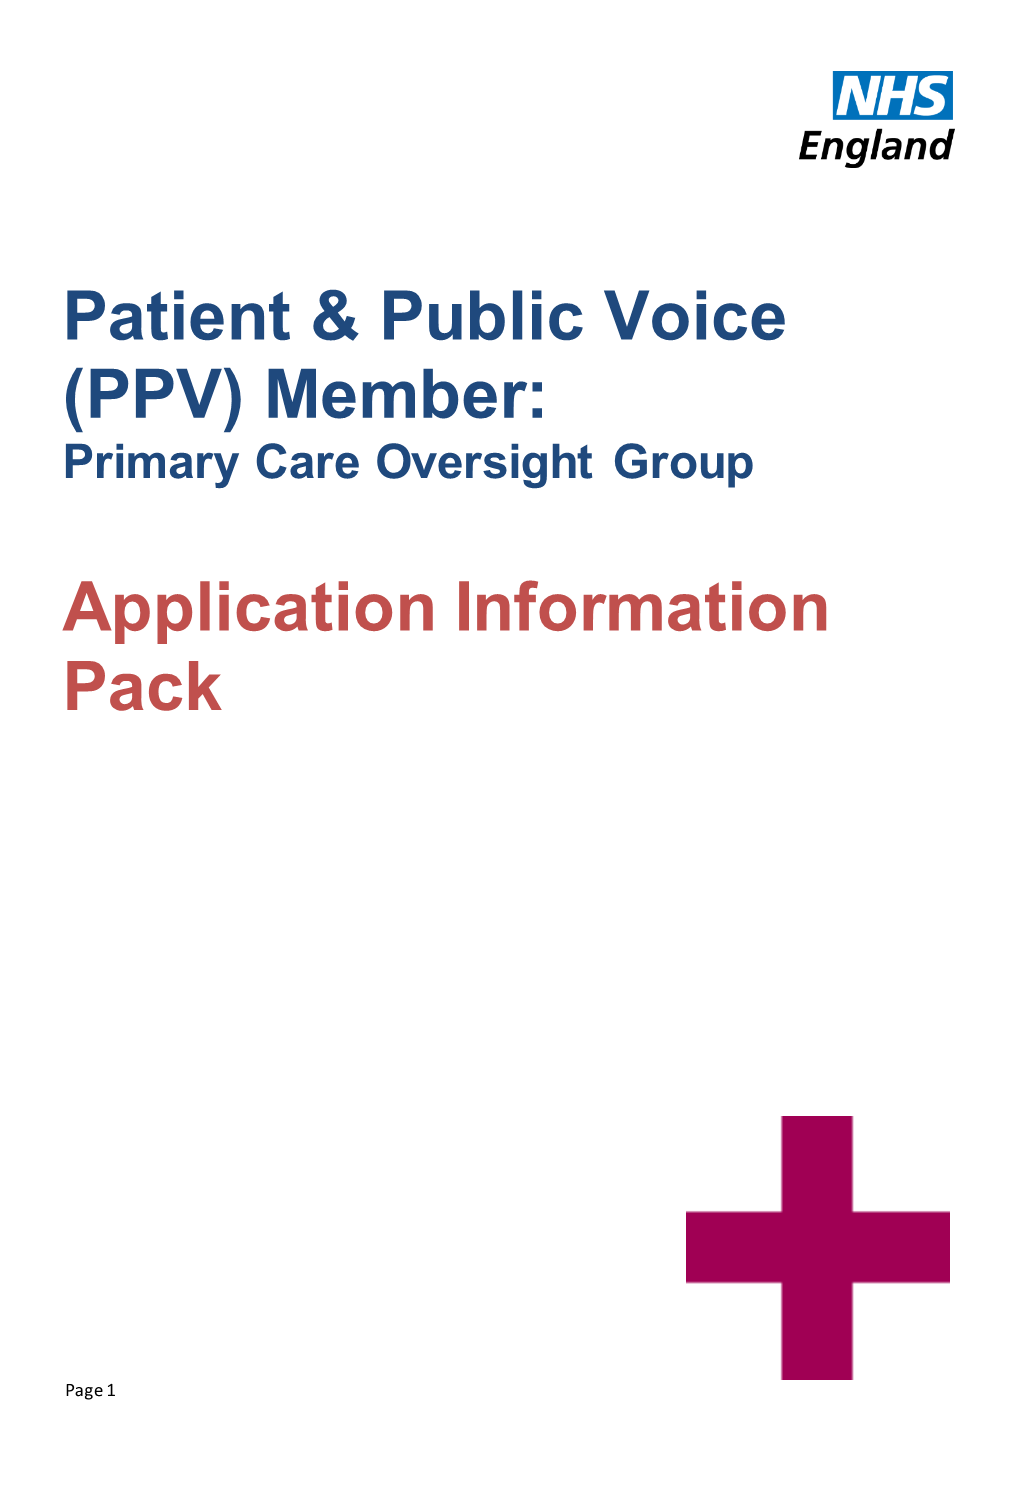 Patient & Public Voice (PPV) Member: Application Information Pack